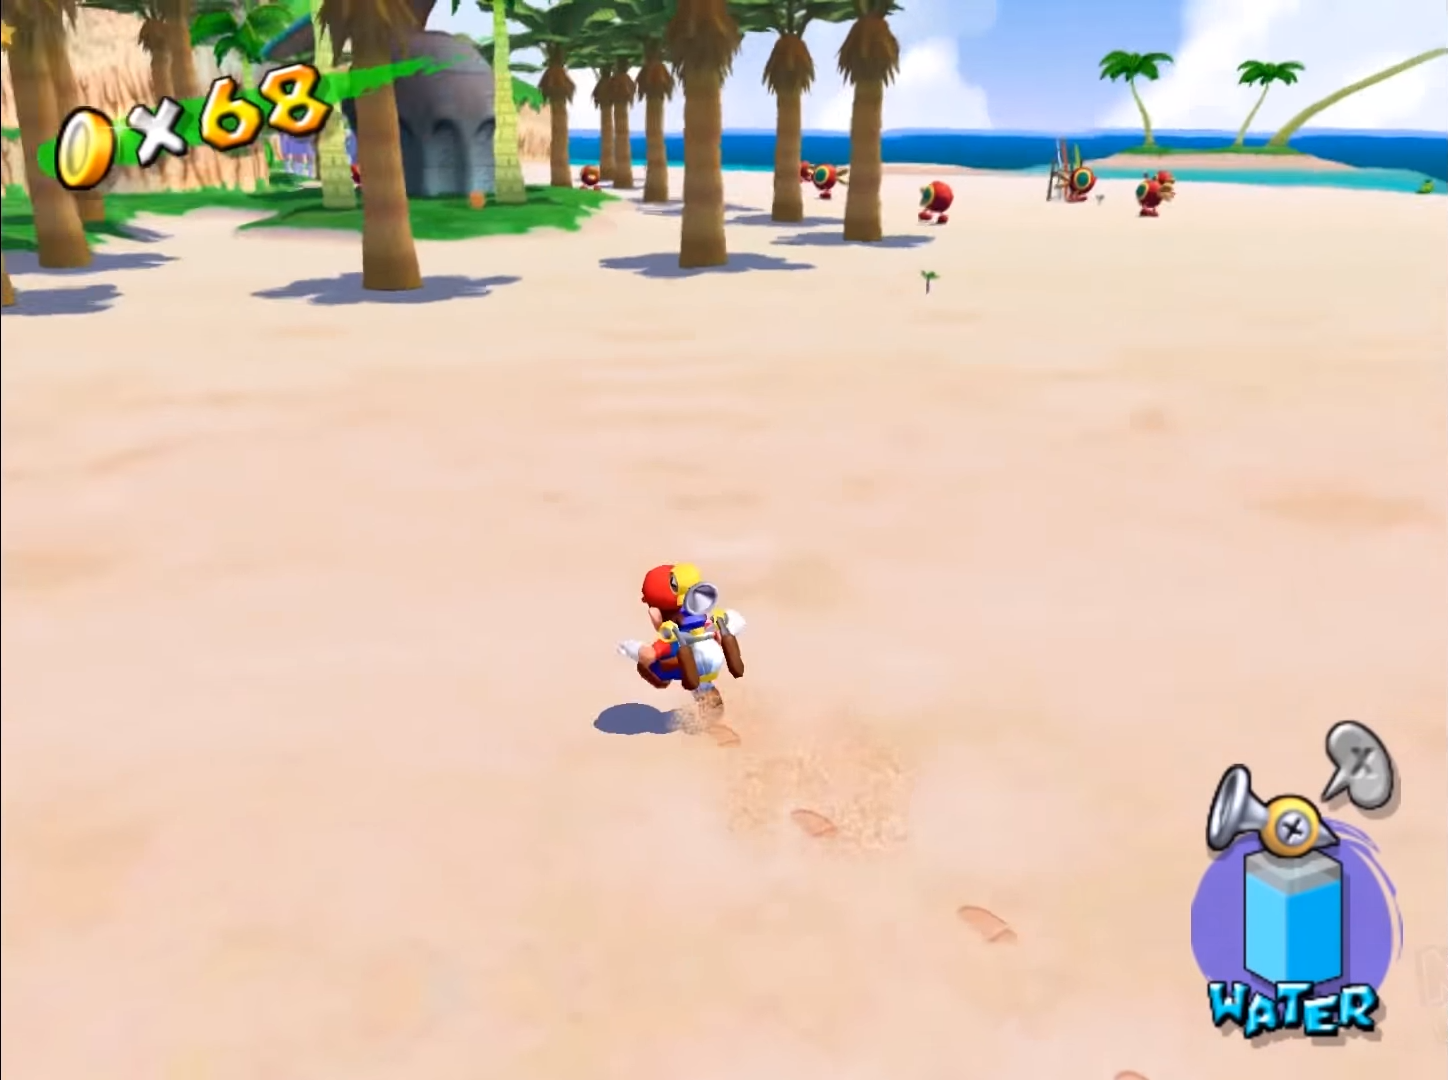 Super Mario Sunshine, drugi je 3D nastavak u serijalu, te prva Mario igrica izdana za Nintendovu konzolu GameCube. U ovom nastavku, Mario i princeza Peach su na godišnjem odmoru na otoku Delfino, na kojem zli dvojnik Maria vandalizira i devastira otok. Kaznu za vandaliziranje će snositi dobri Mario, kojem se dodjeljuje vodeni pištolj, s kojim mora počistiti cijeli otok. Po mehanikama, igra uvelike podsjeća na Super Mario 64, no uvodi neke nove trikove poput posebnih skokova s okretima i sličnog. 